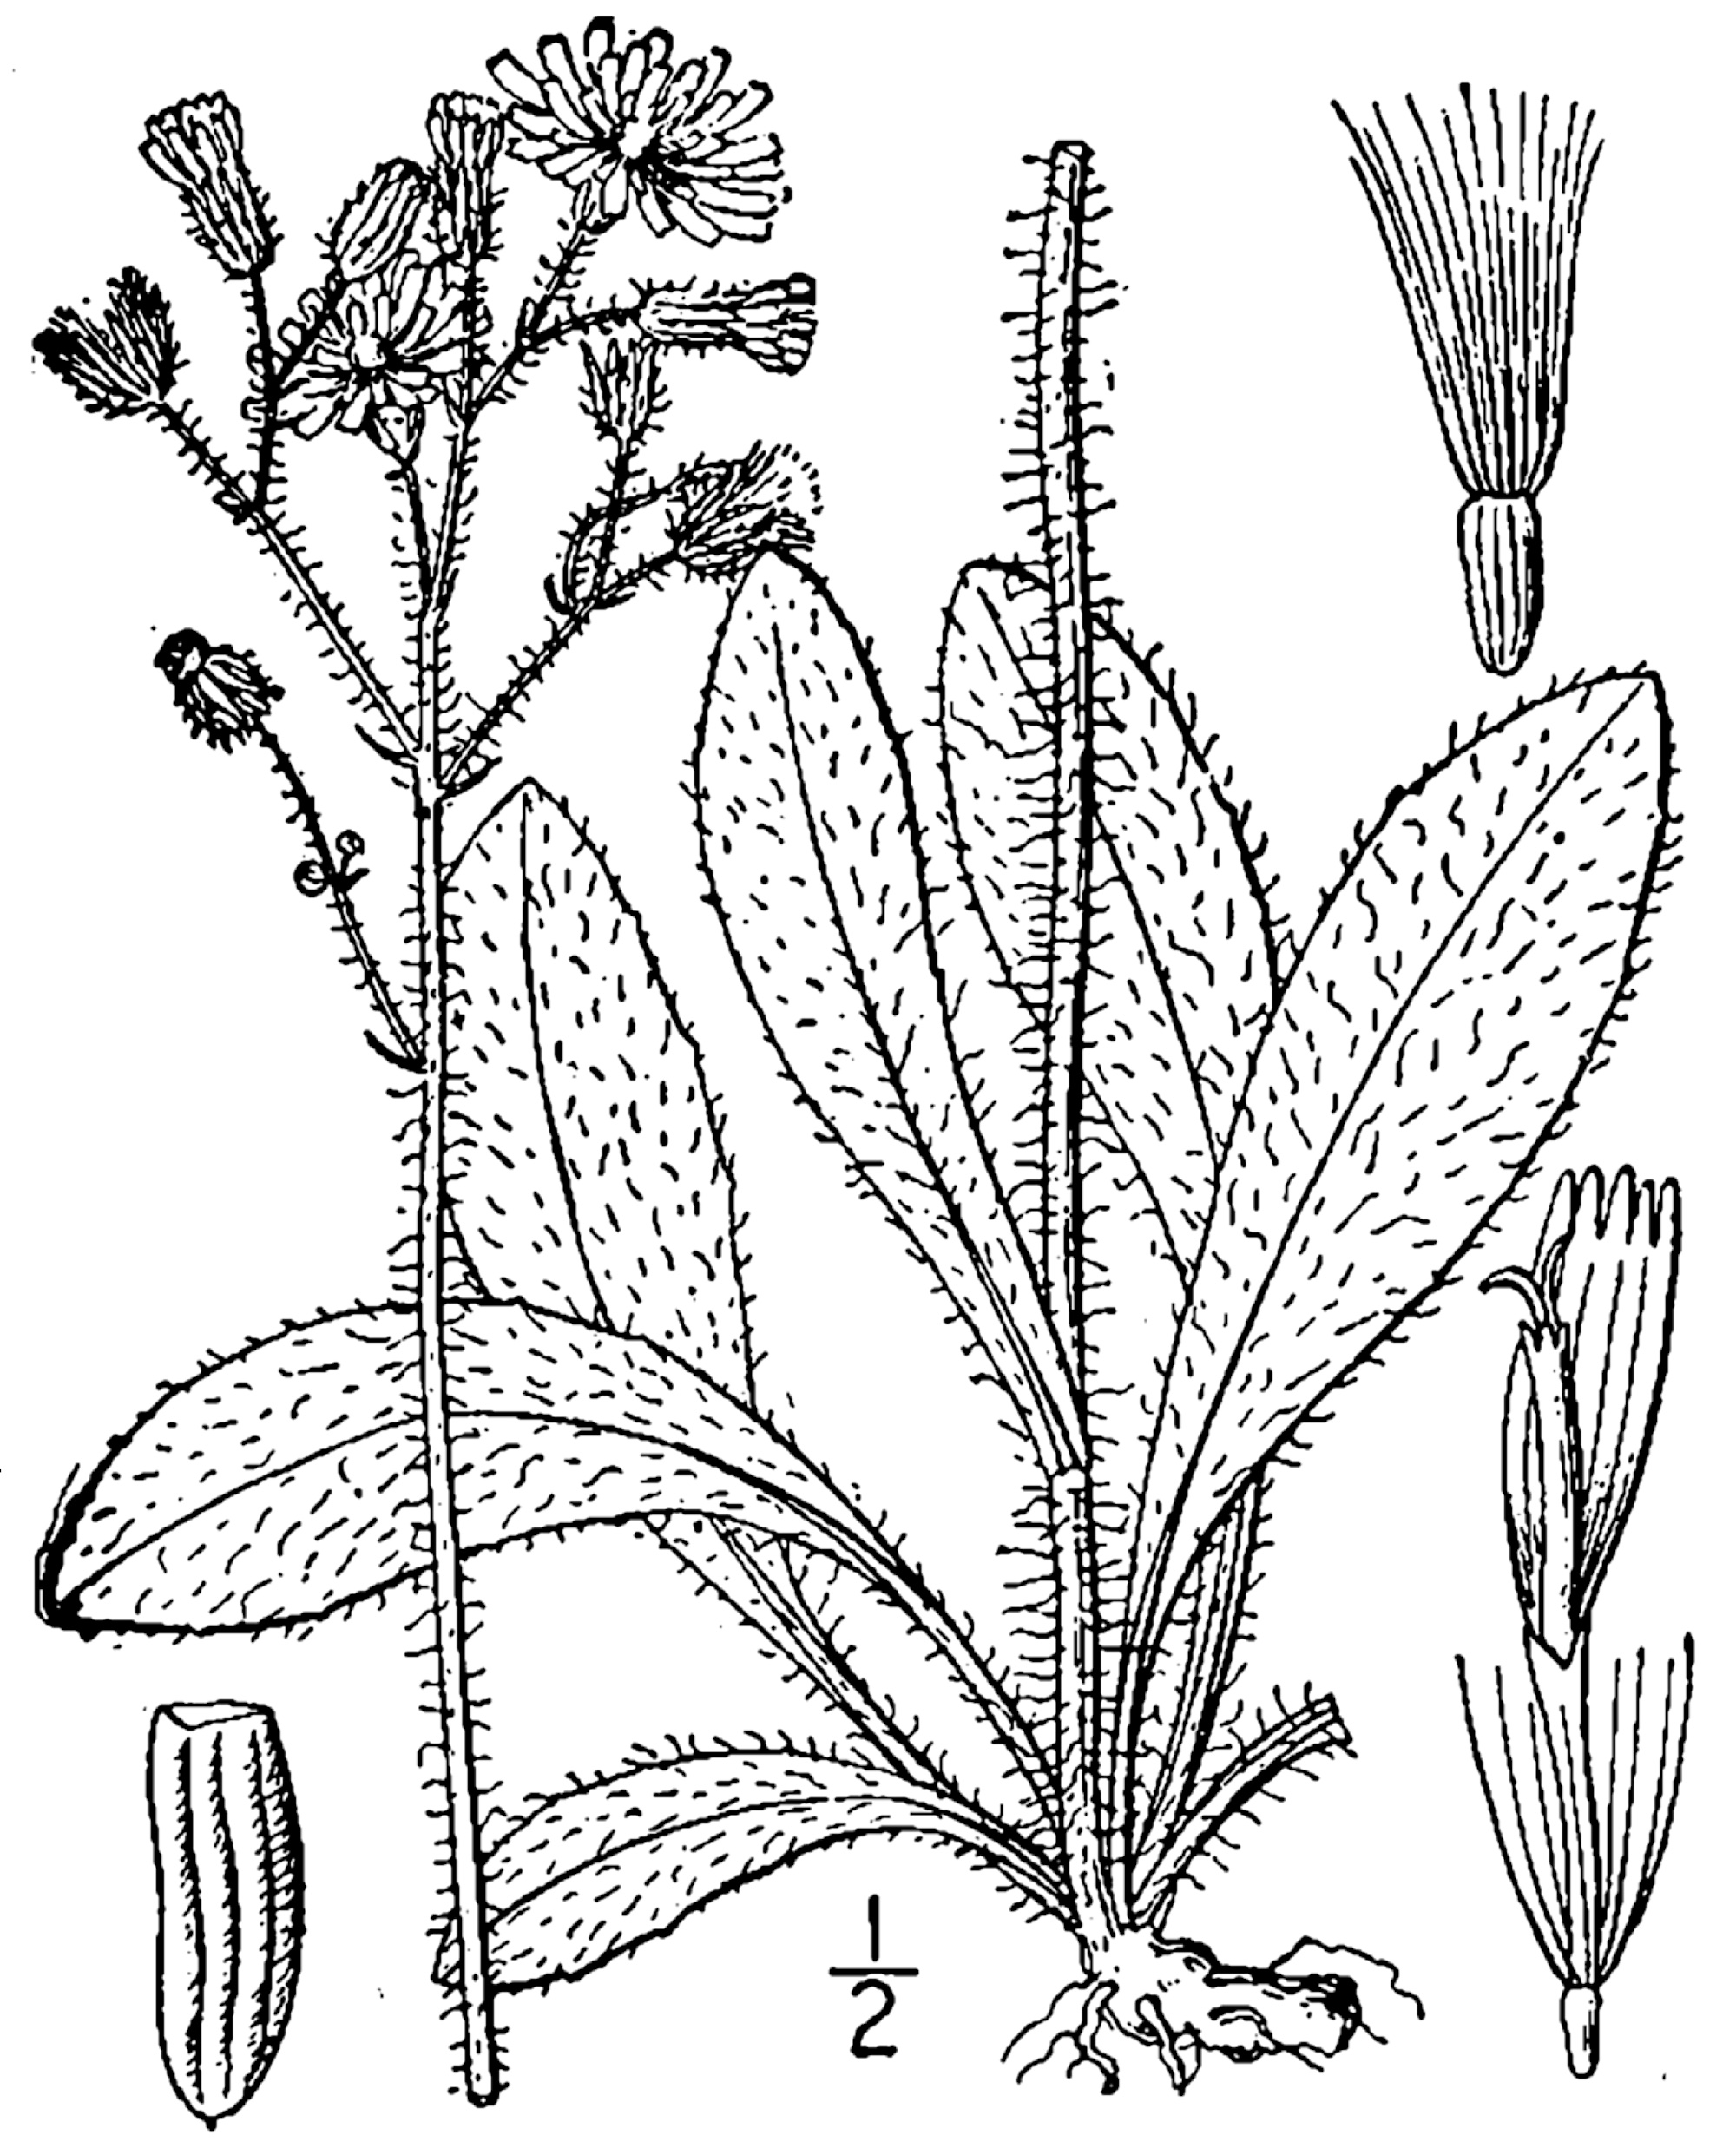 1913 line drawing of Hieracium caespitosum.